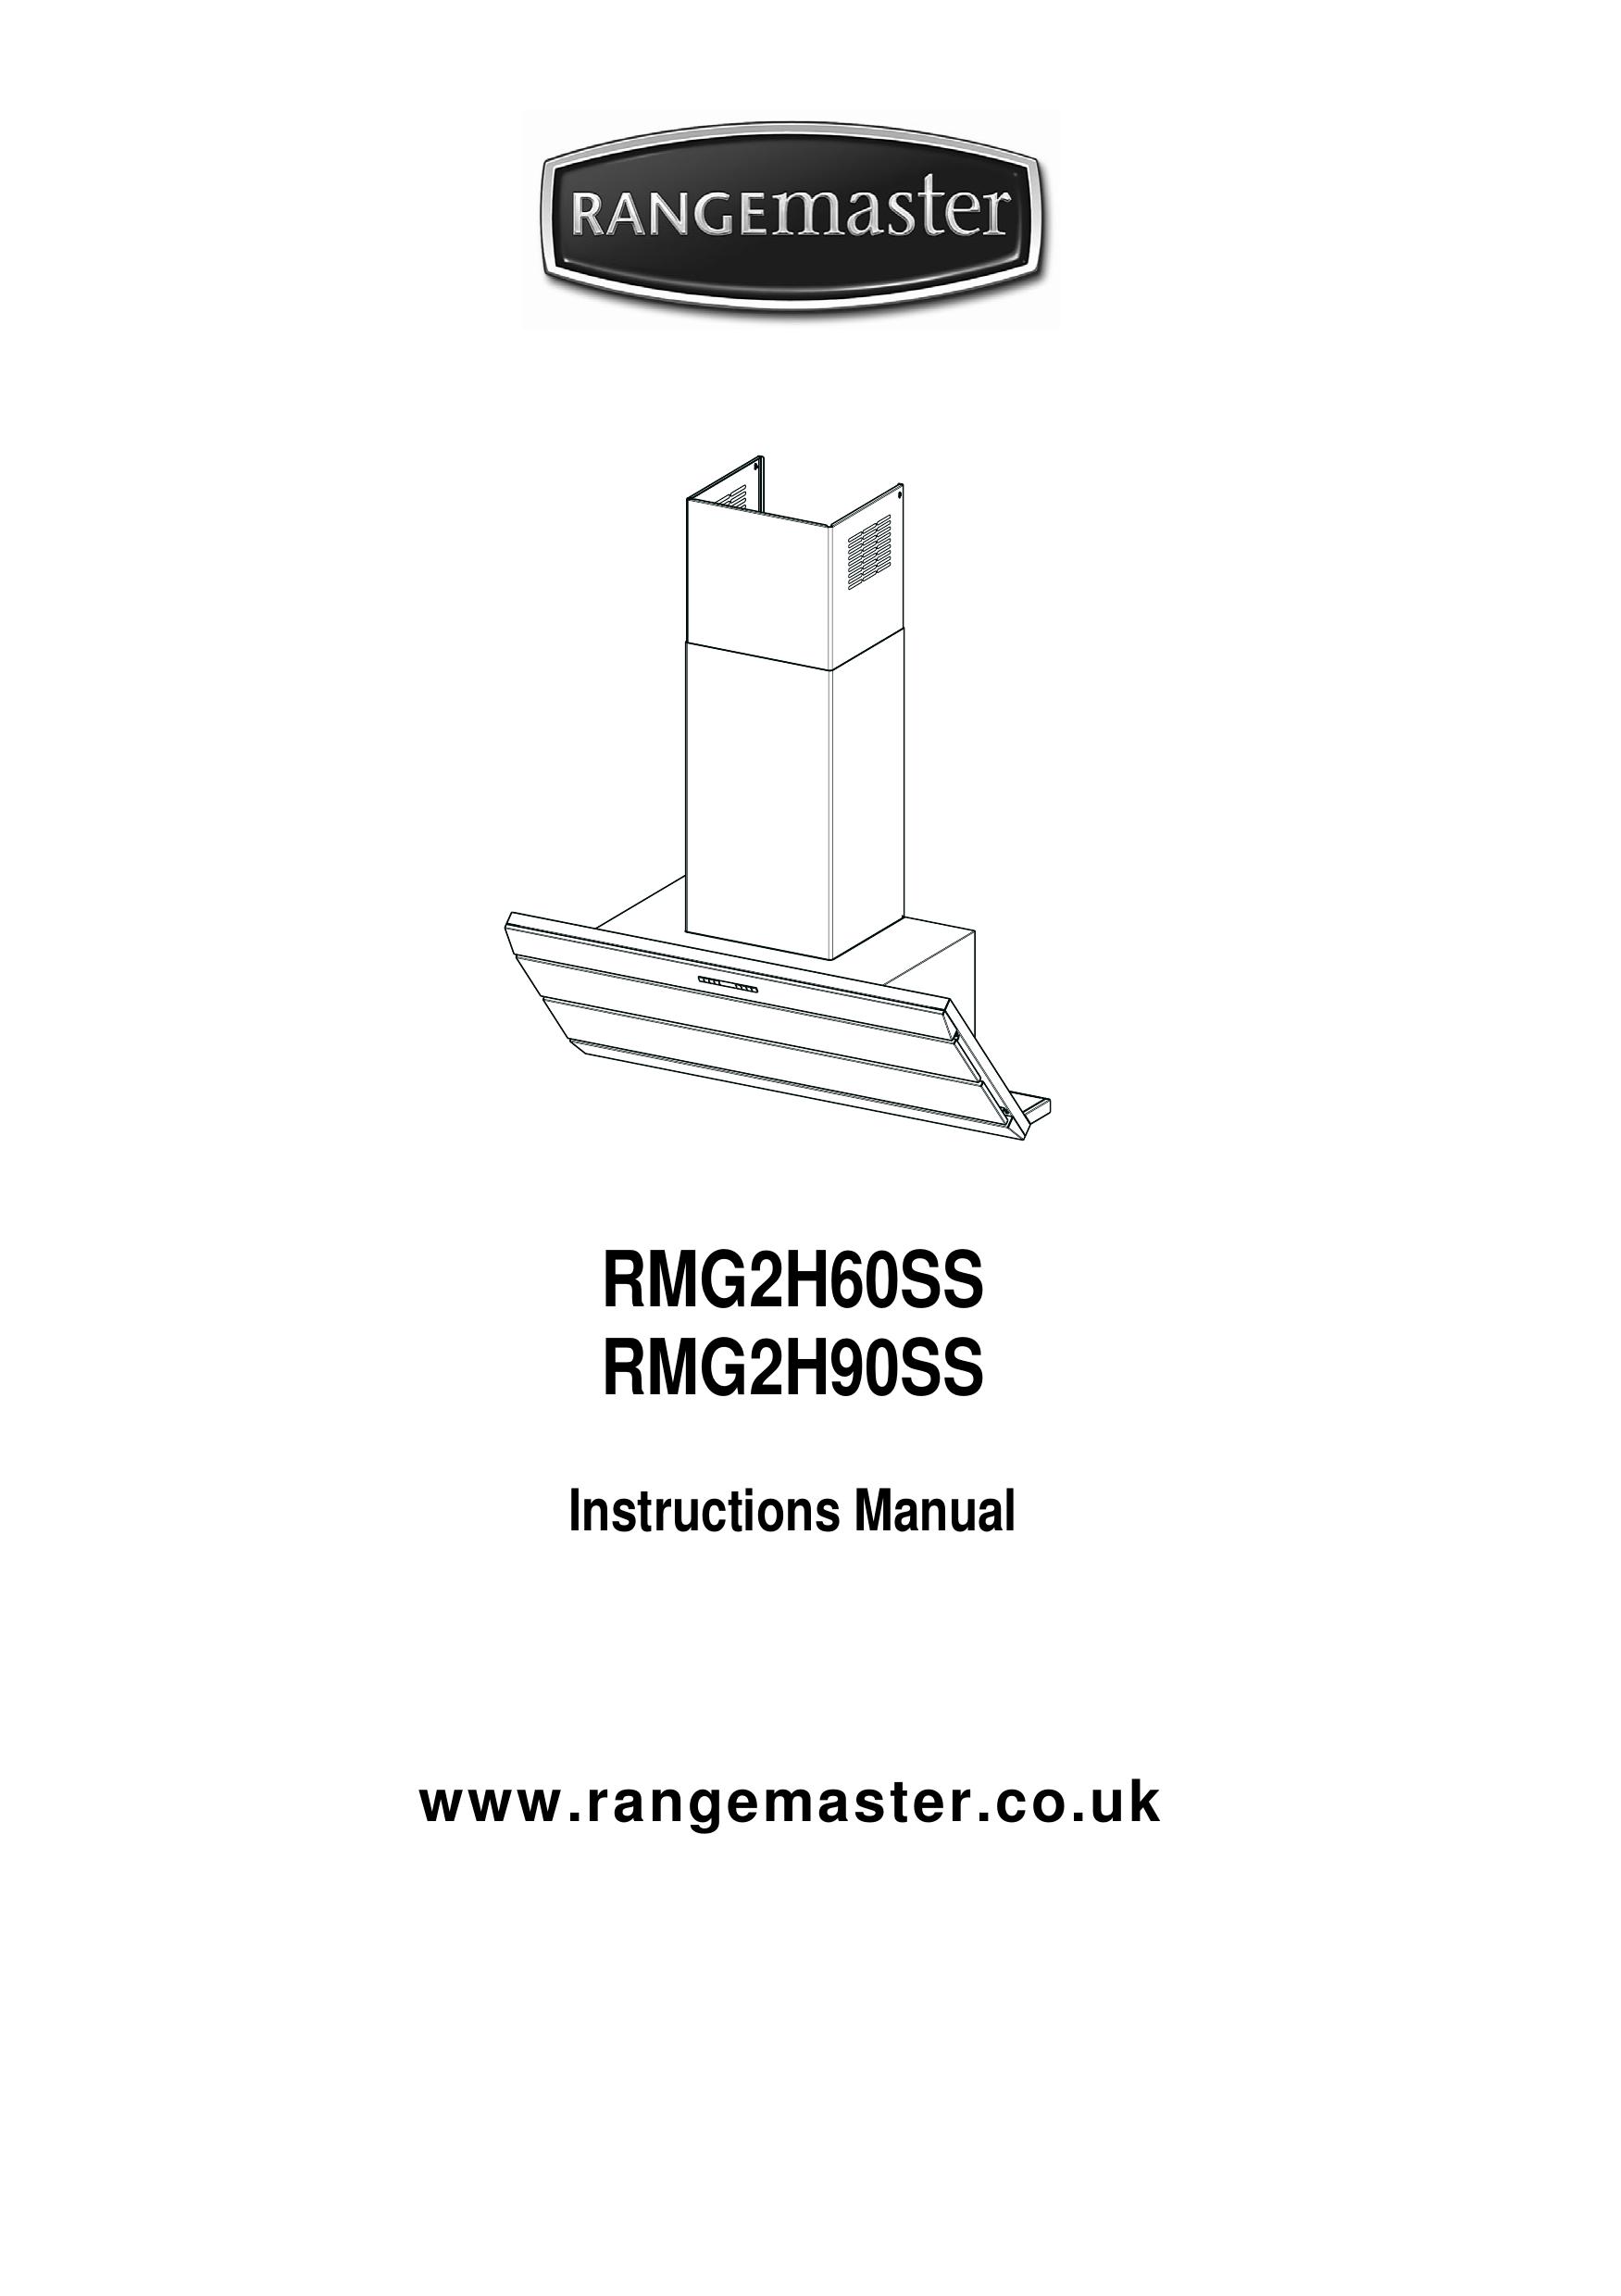 Rangemaster RMG2H60SS Ventilation Hood User Manual